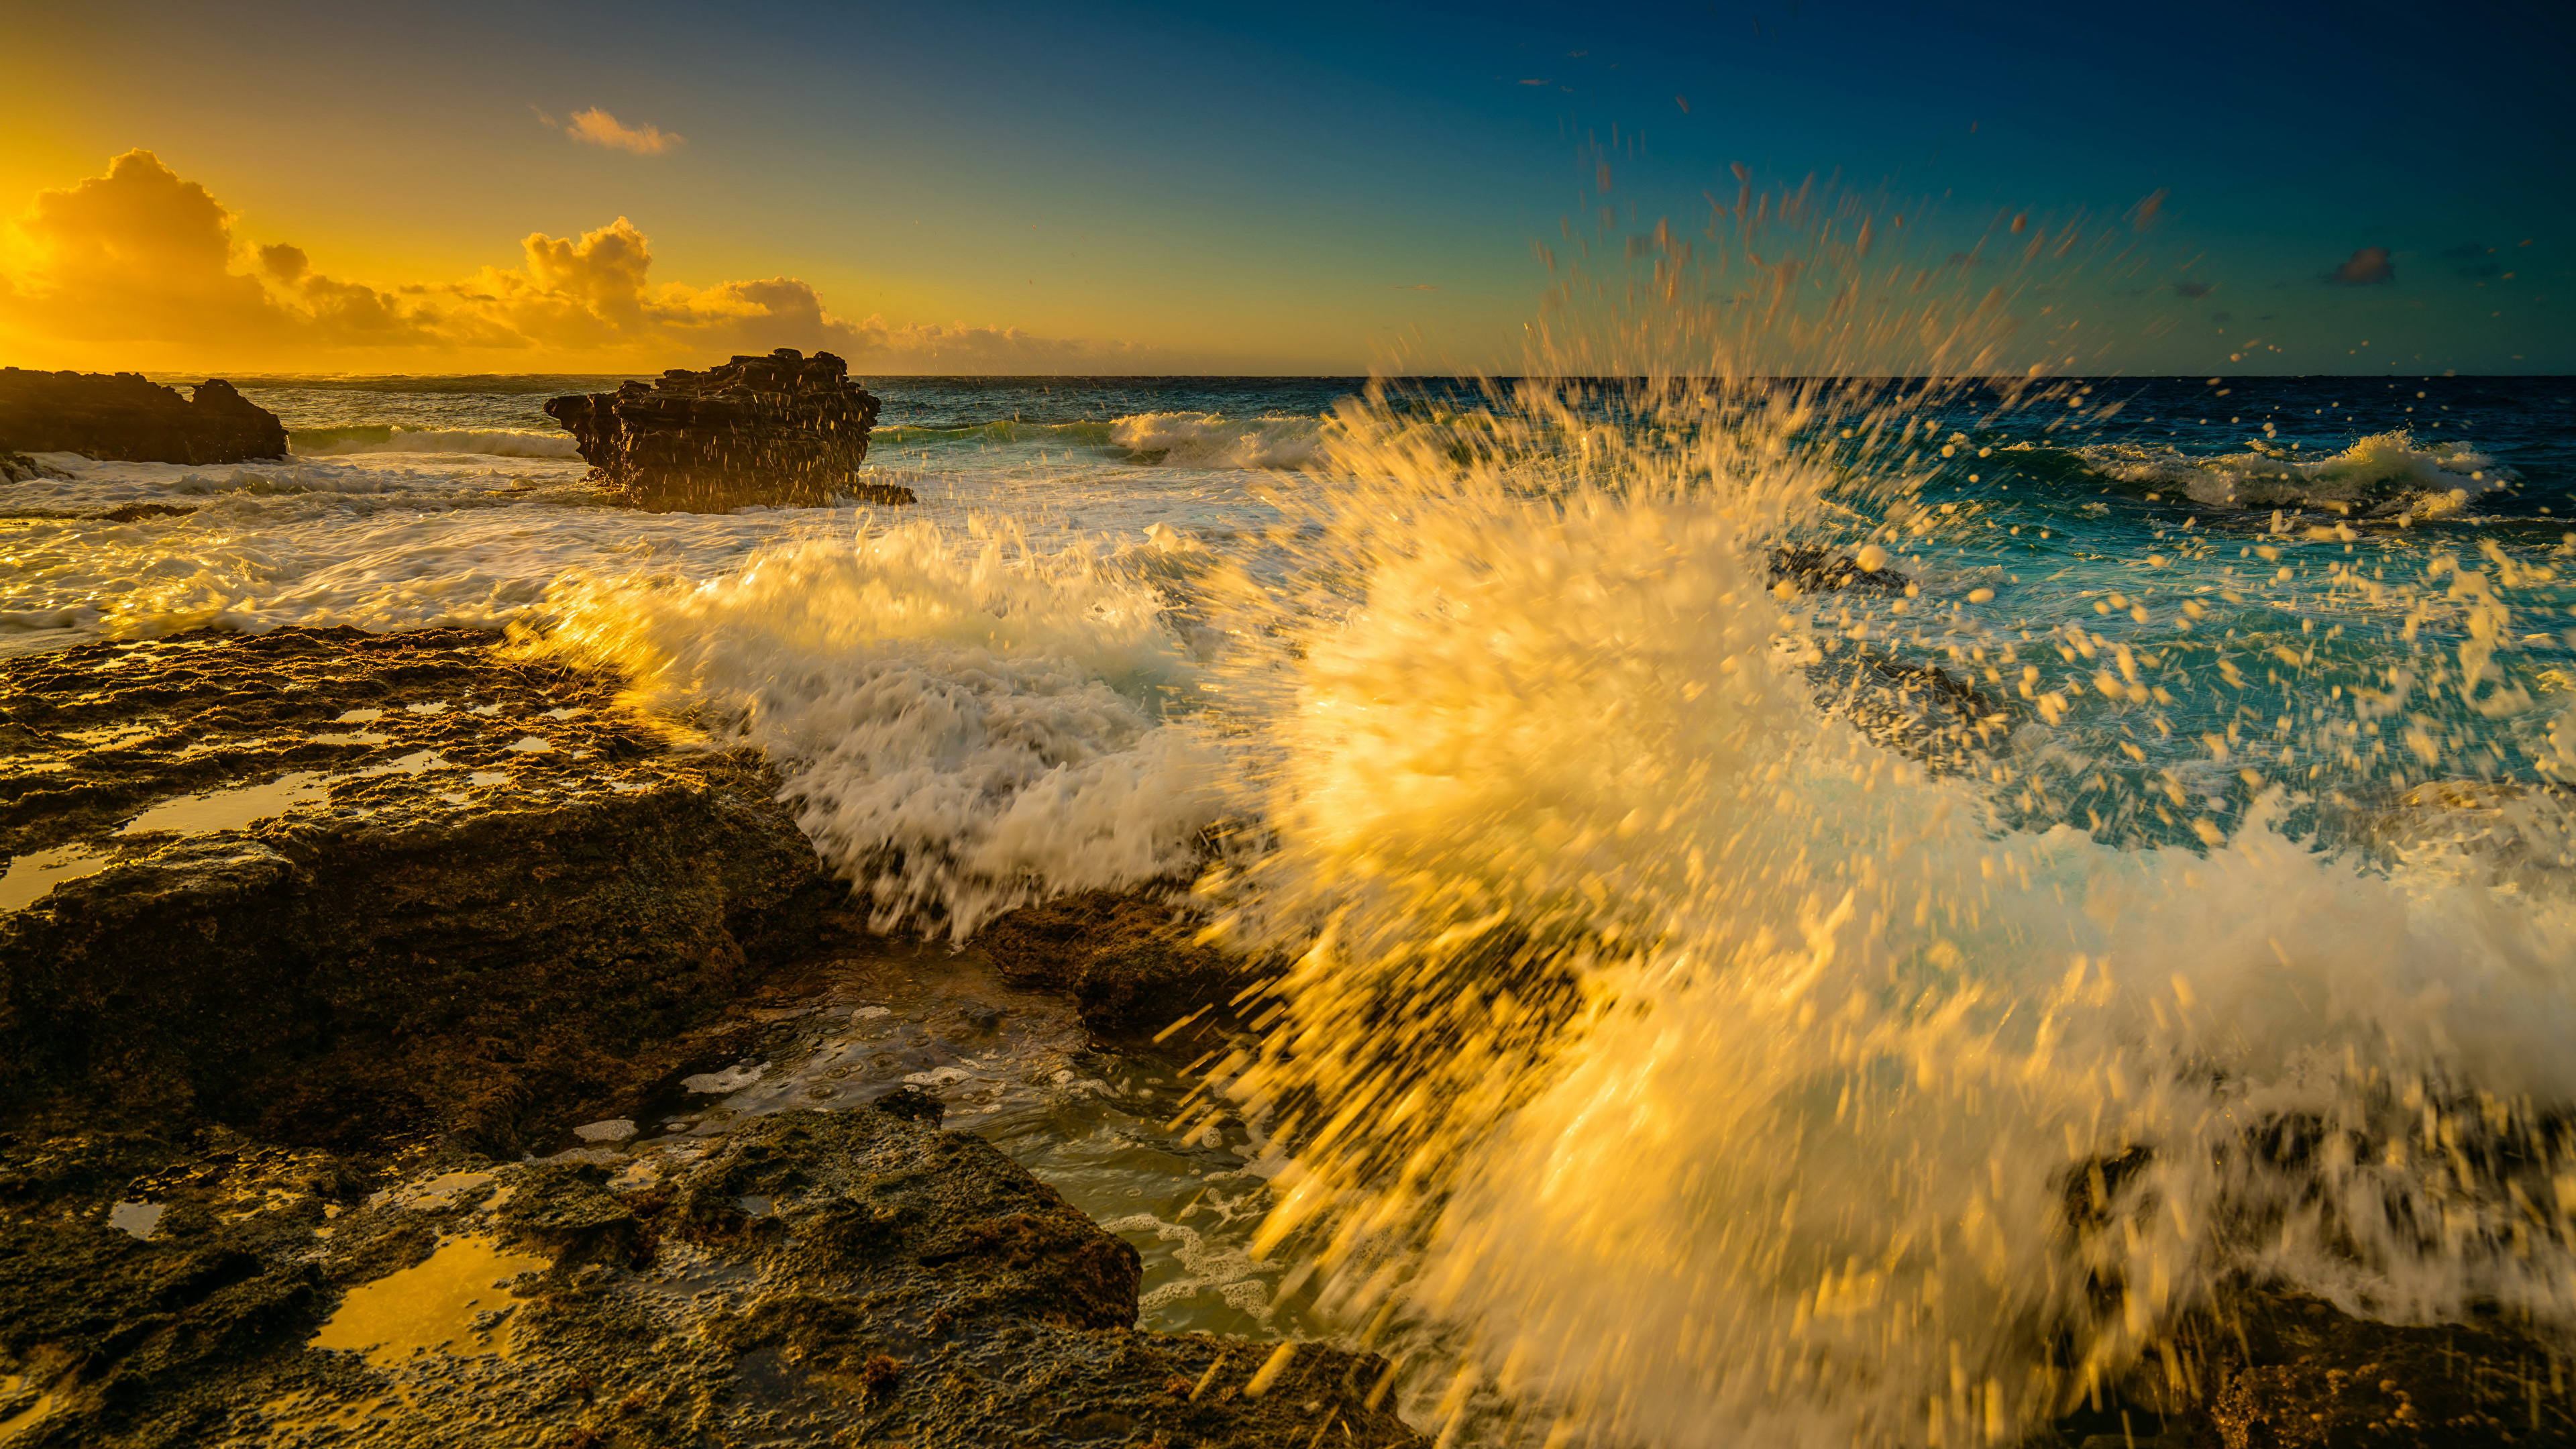 壁紙 3840x2160 波 朝焼けと日没 アメリカ合衆国 大洋 Oahu ハワイ州 コケ 水飛沫 自然 ダウンロード 写真